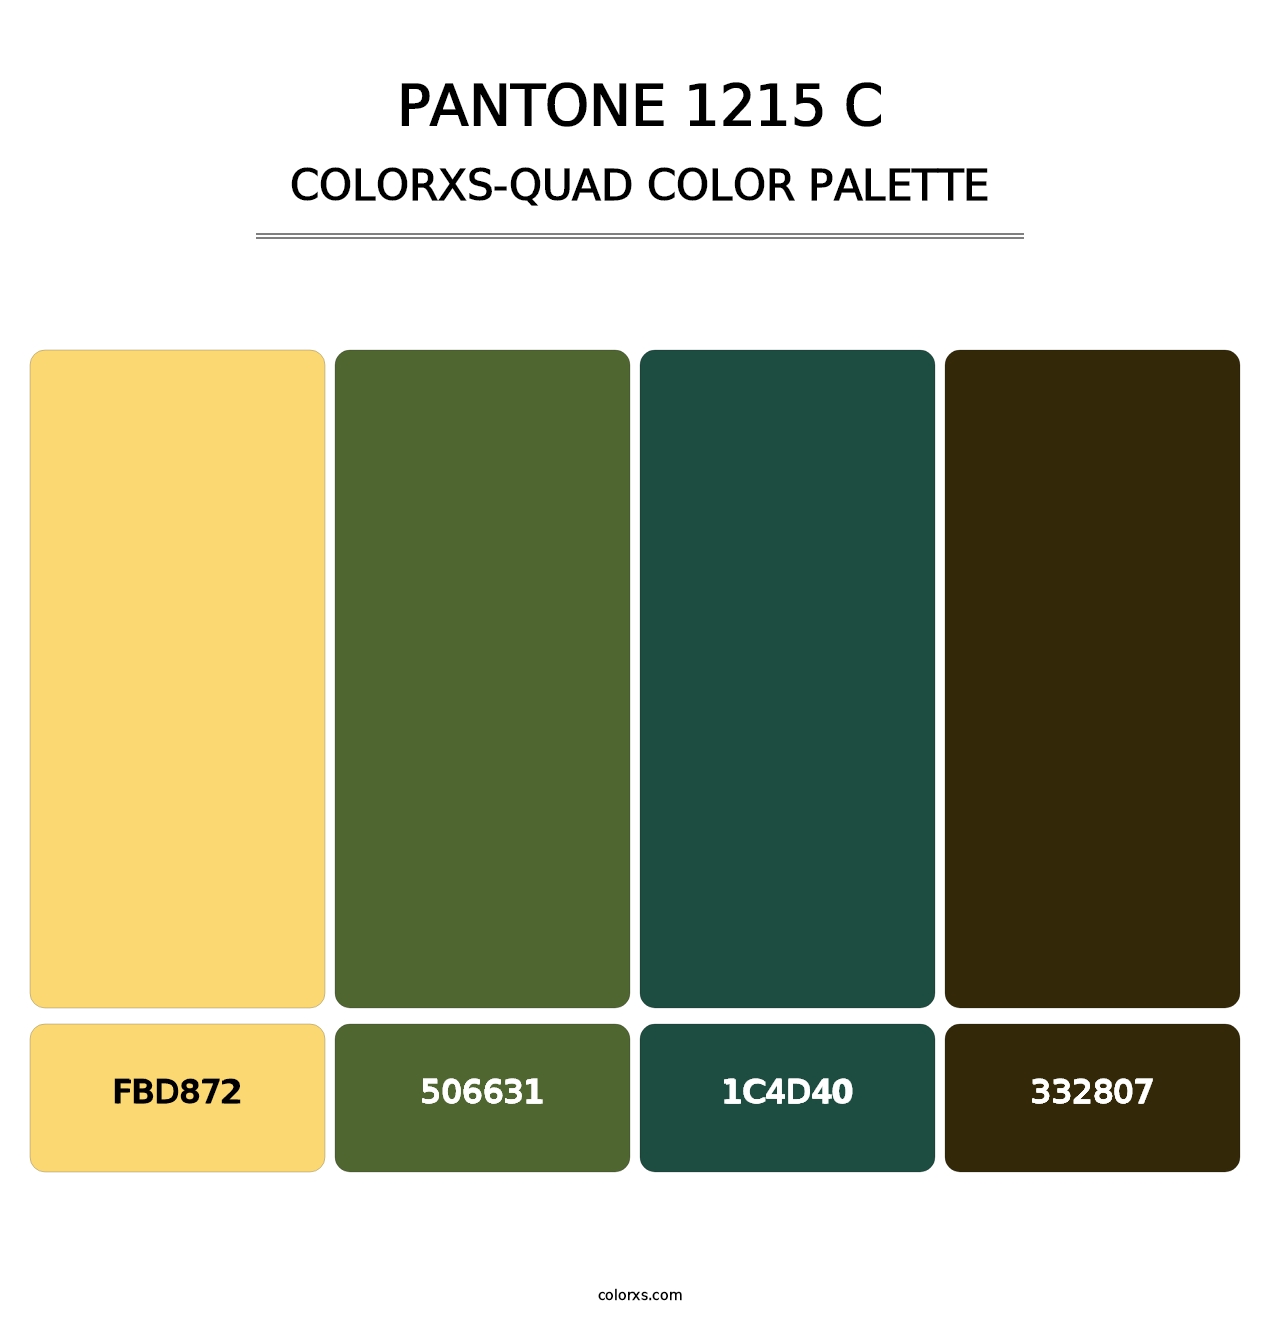 PANTONE 1215 C - Colorxs Quad Palette